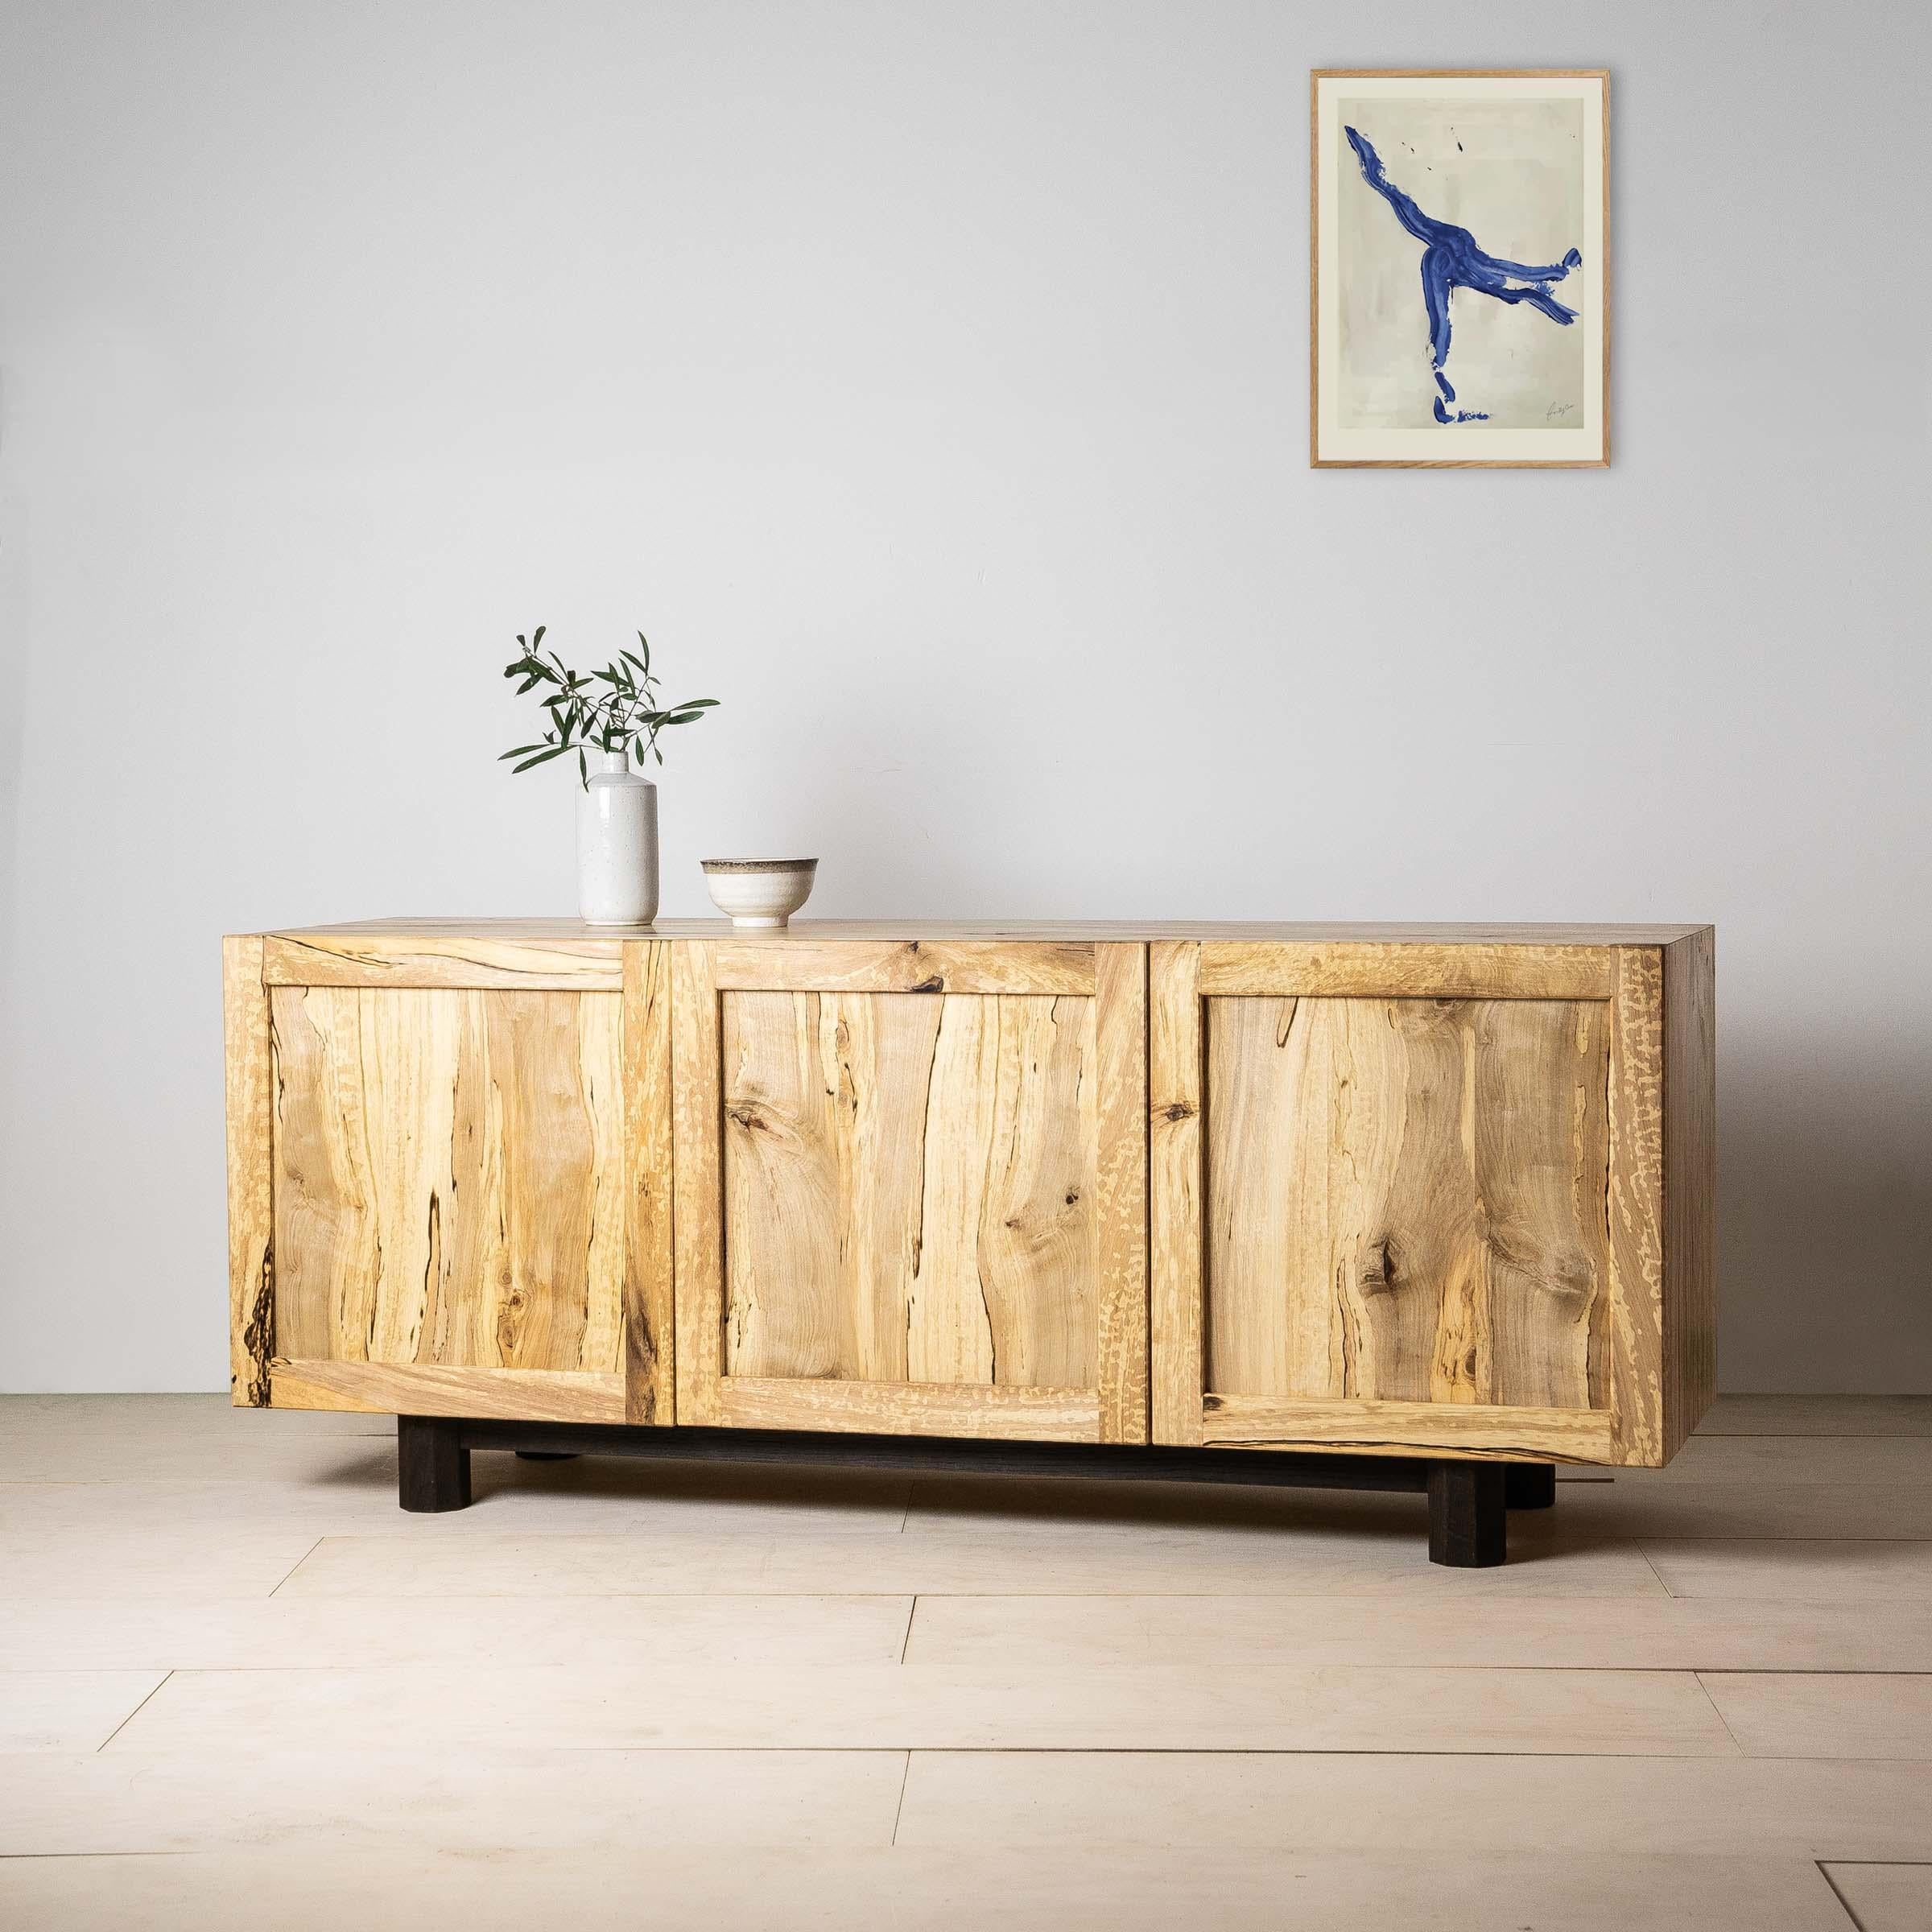 Le meuble multimédia Inari est une célébration du charme spalmé, un bois indigène rare dont les marbrures naturelles complexes ont été formées par les champignons qui ont pénétré dans l'arbre au cours de sa croissance.

L'armoire est dotée de trois